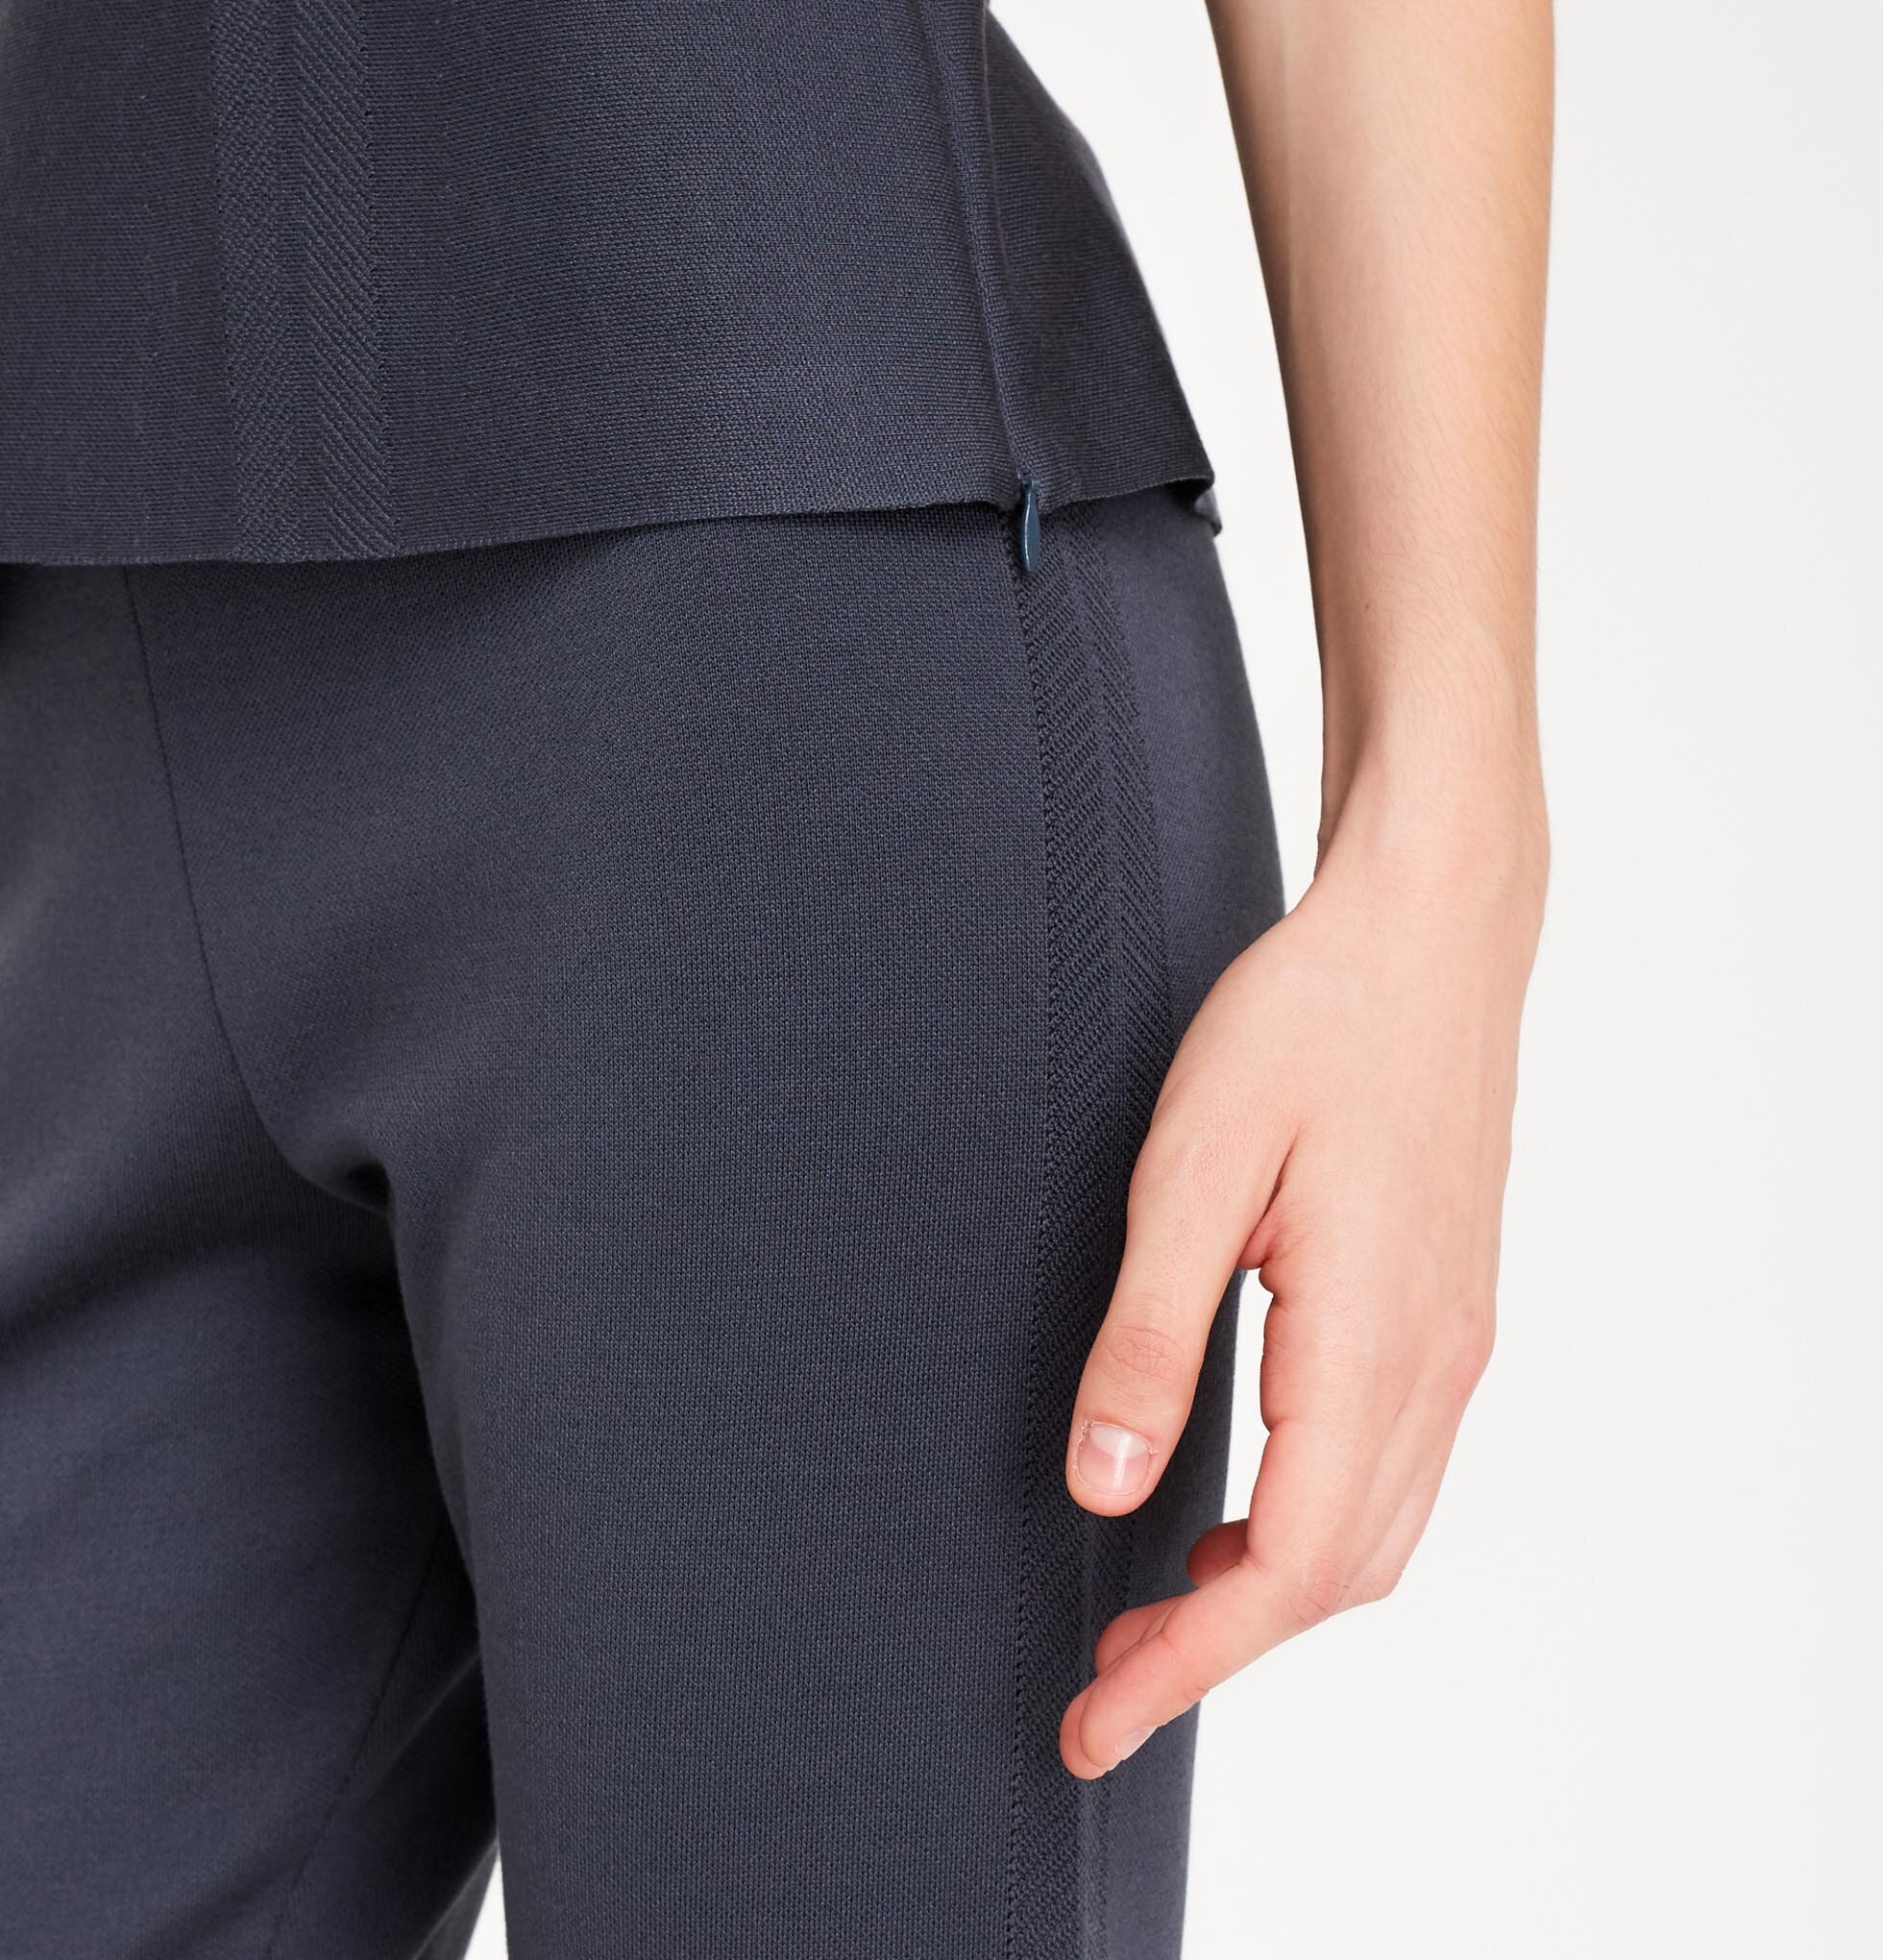 E-064-pantalone-seta-dettaglio-smacchinatura-grigio-1960 x 2040.jpg